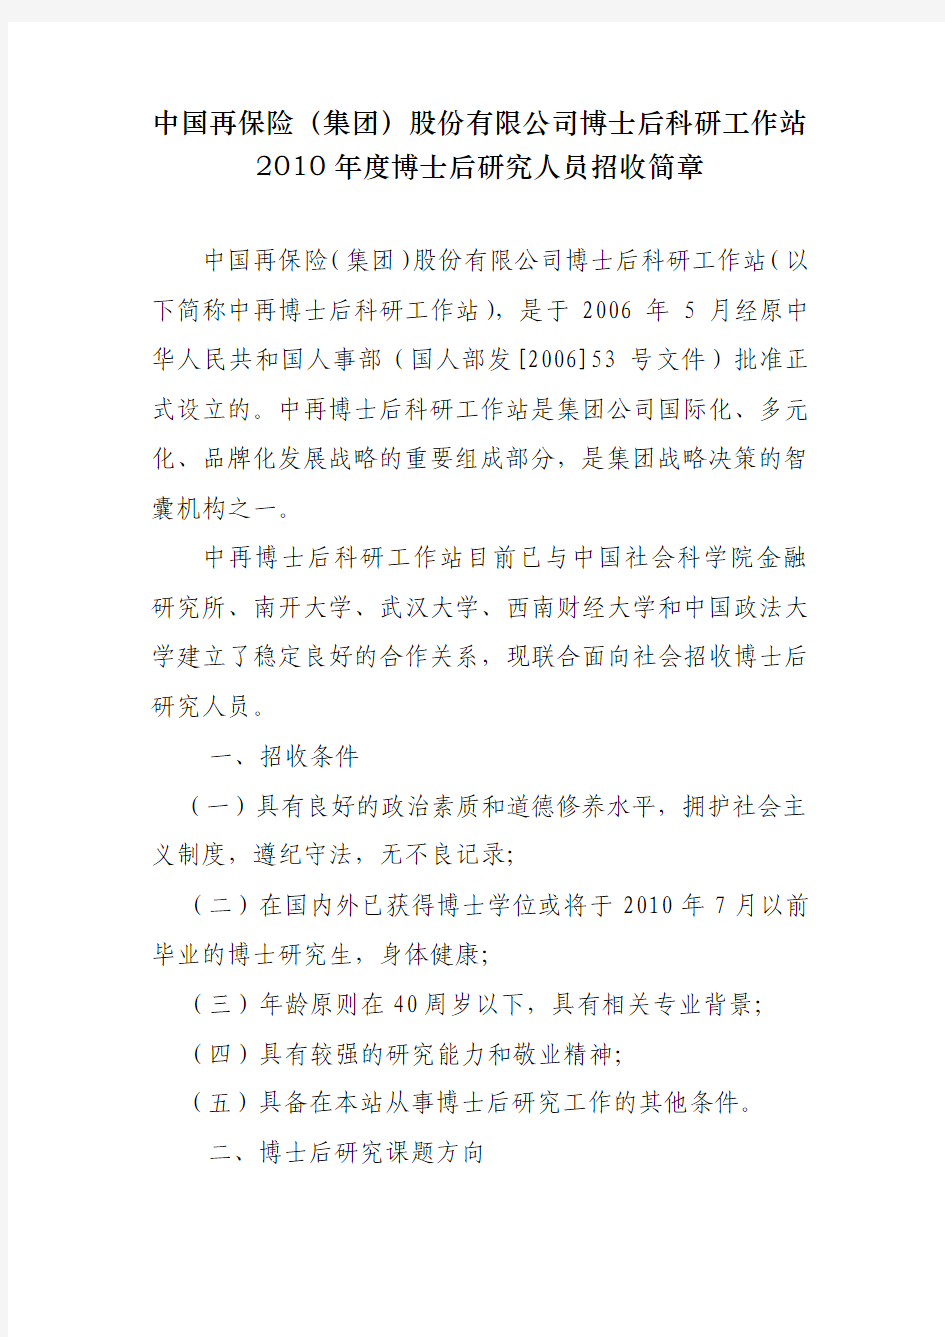 中国再保险(集团)股份有限公司博士后科研工作站